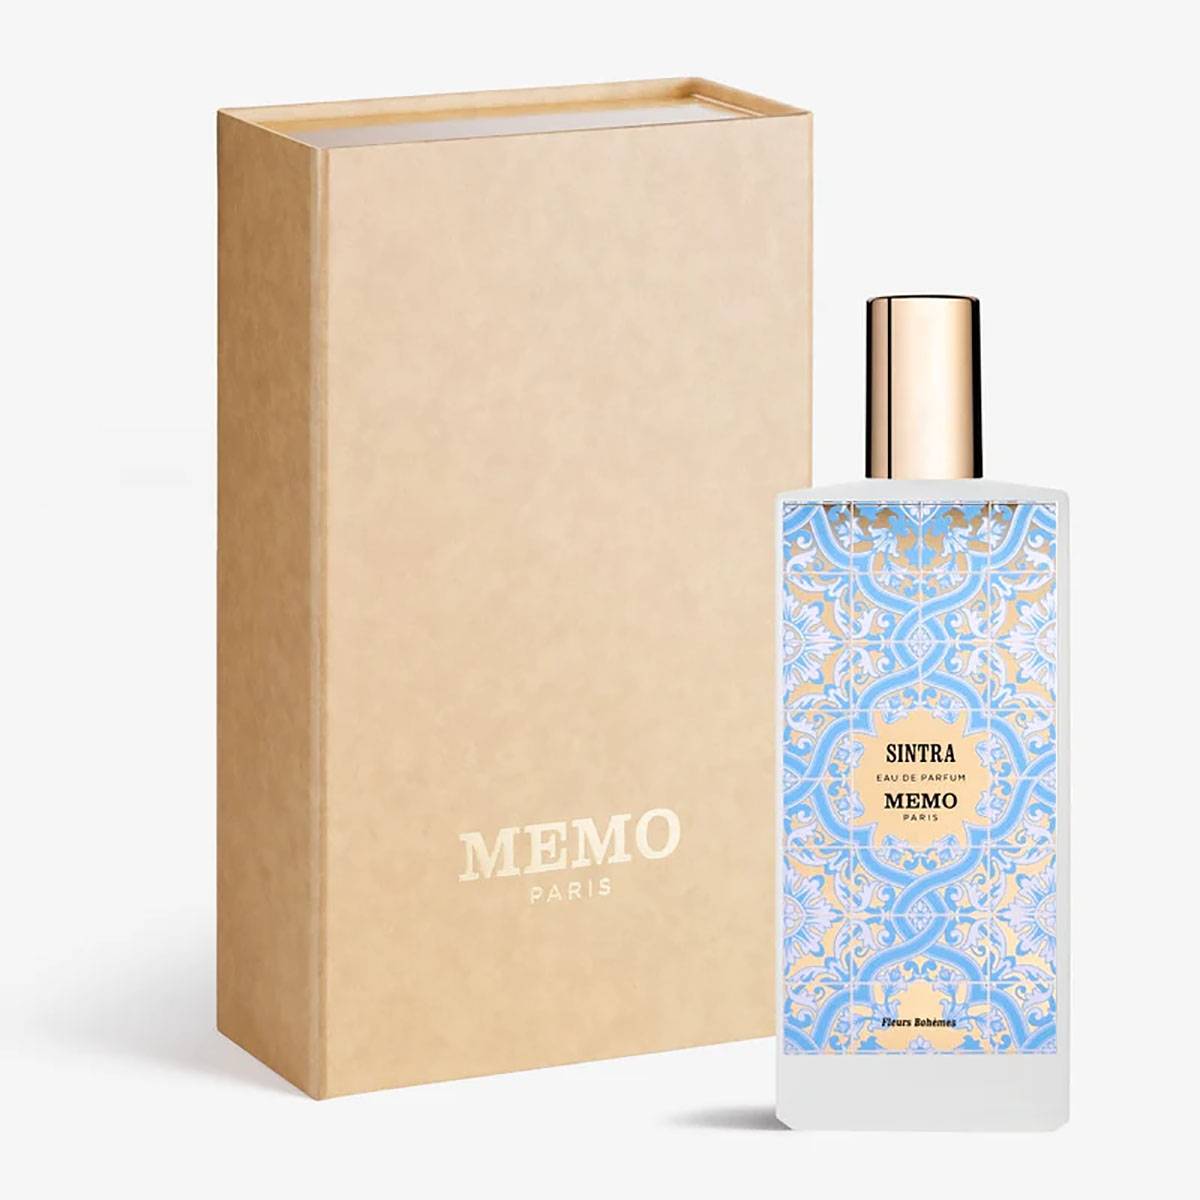 Woda perfumowana Memo Paris Sintra, cena: 1055 zł / 75 ml / Perfumeriaquality.pl (Fot. Materiały prasowe)